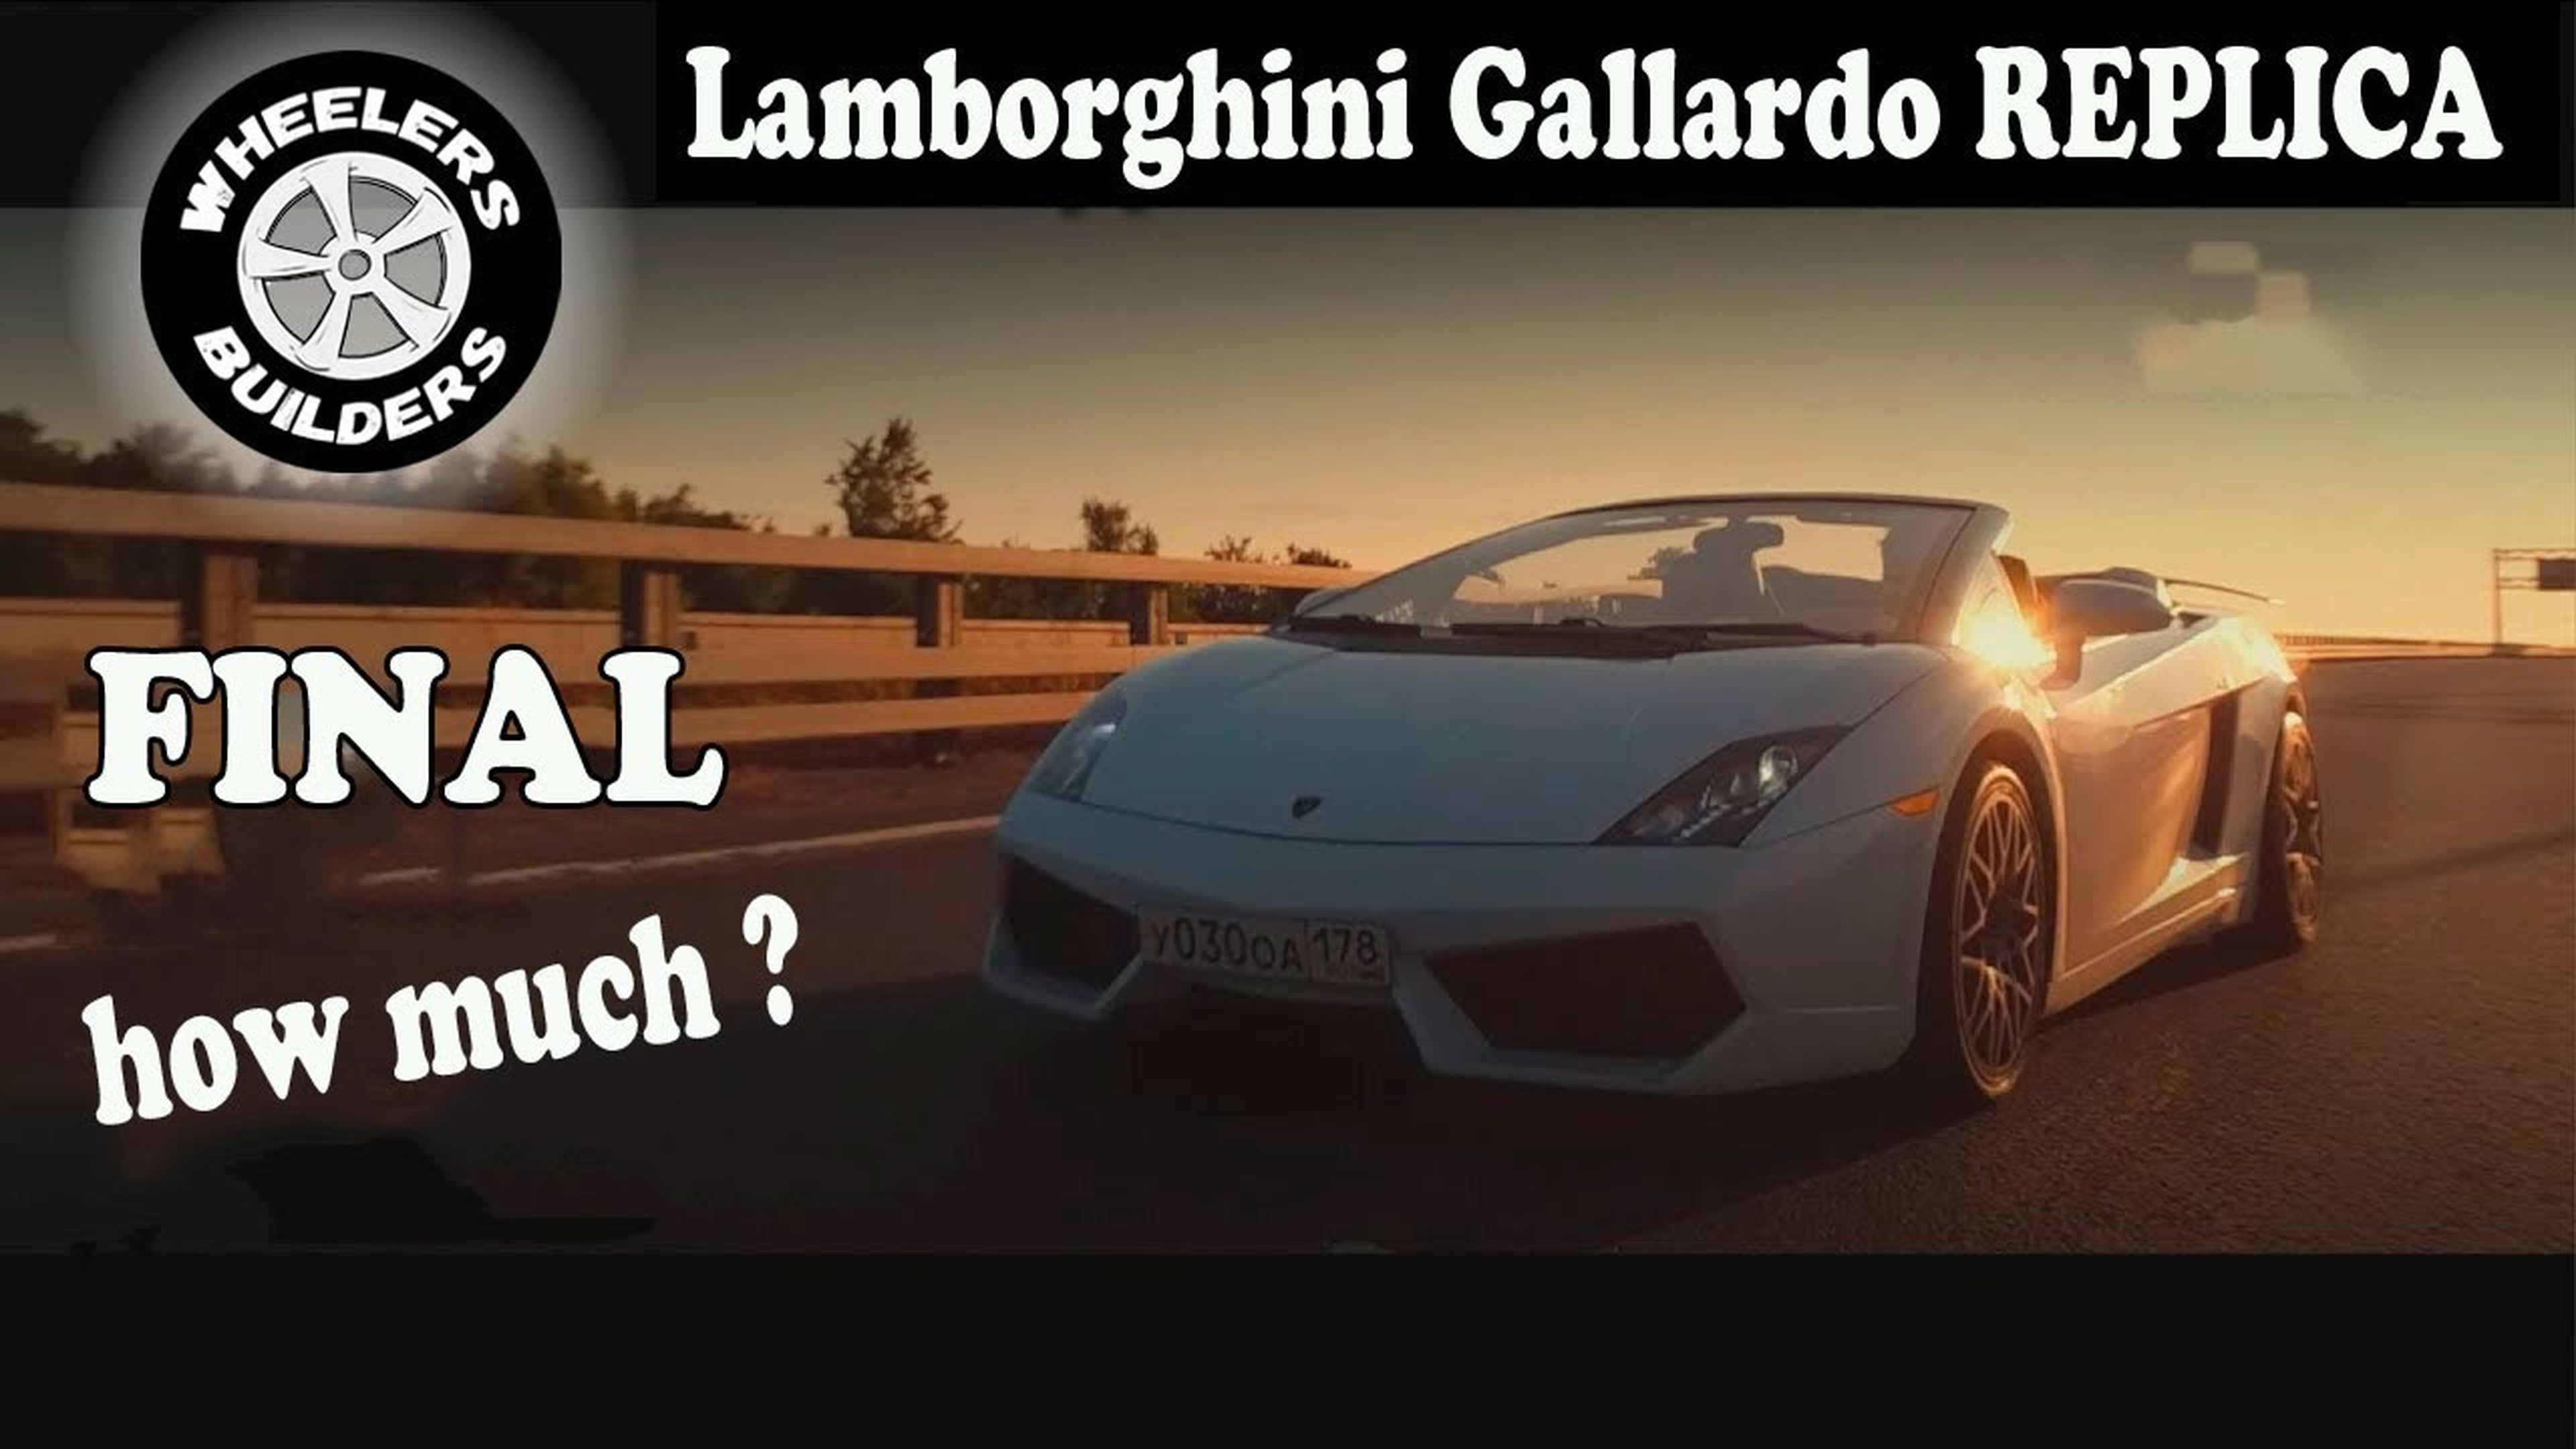 Lamborghini Gallardo REPLICA - The FINAL!